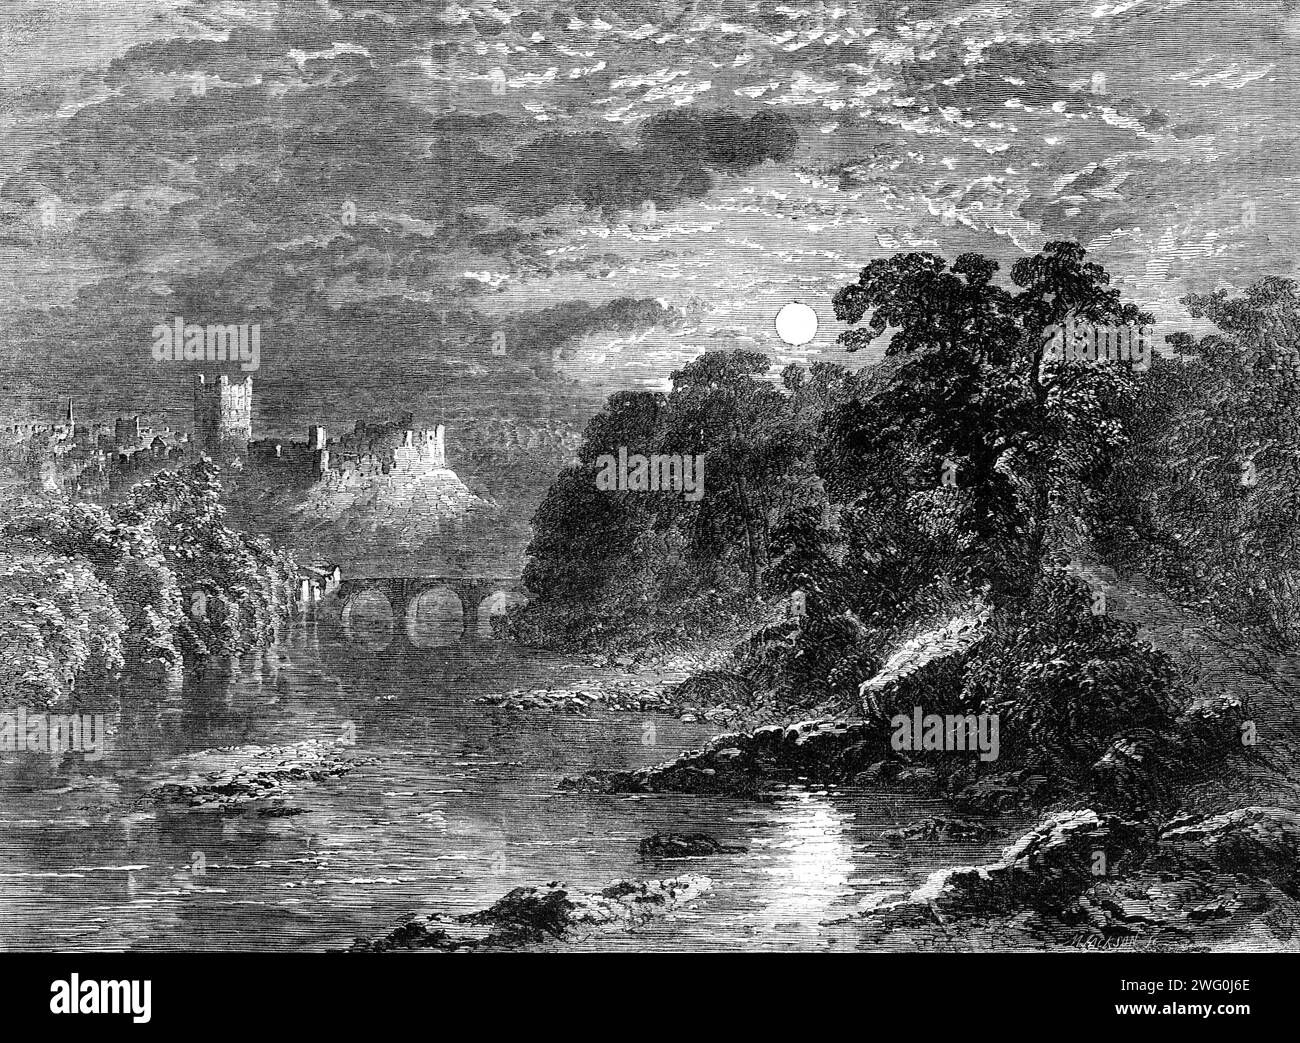 Richmond Castle, Yorkshire, par G. Dodgson, dans l'exposition de la Society of Painters in Water Colours, 1862. « Nous gravons ce dessin non seulement parce qu'il est un exemple favorable de la tendre et belle exécution de l'artiste, mais parce que la scène souvent peinte est représentée d'un point de vue nouveau et avec un effet inédit - celui du clair de lune. La vue est prise depuis les berges du Swale en contrebas du château de Richmond : la ruine se trouve donc à gauche du spectateur. L'effet chatoyant et incertain du clair de lune est très heureusement transmis par une frustre pointillée indéfinissable de touc Banque D'Images